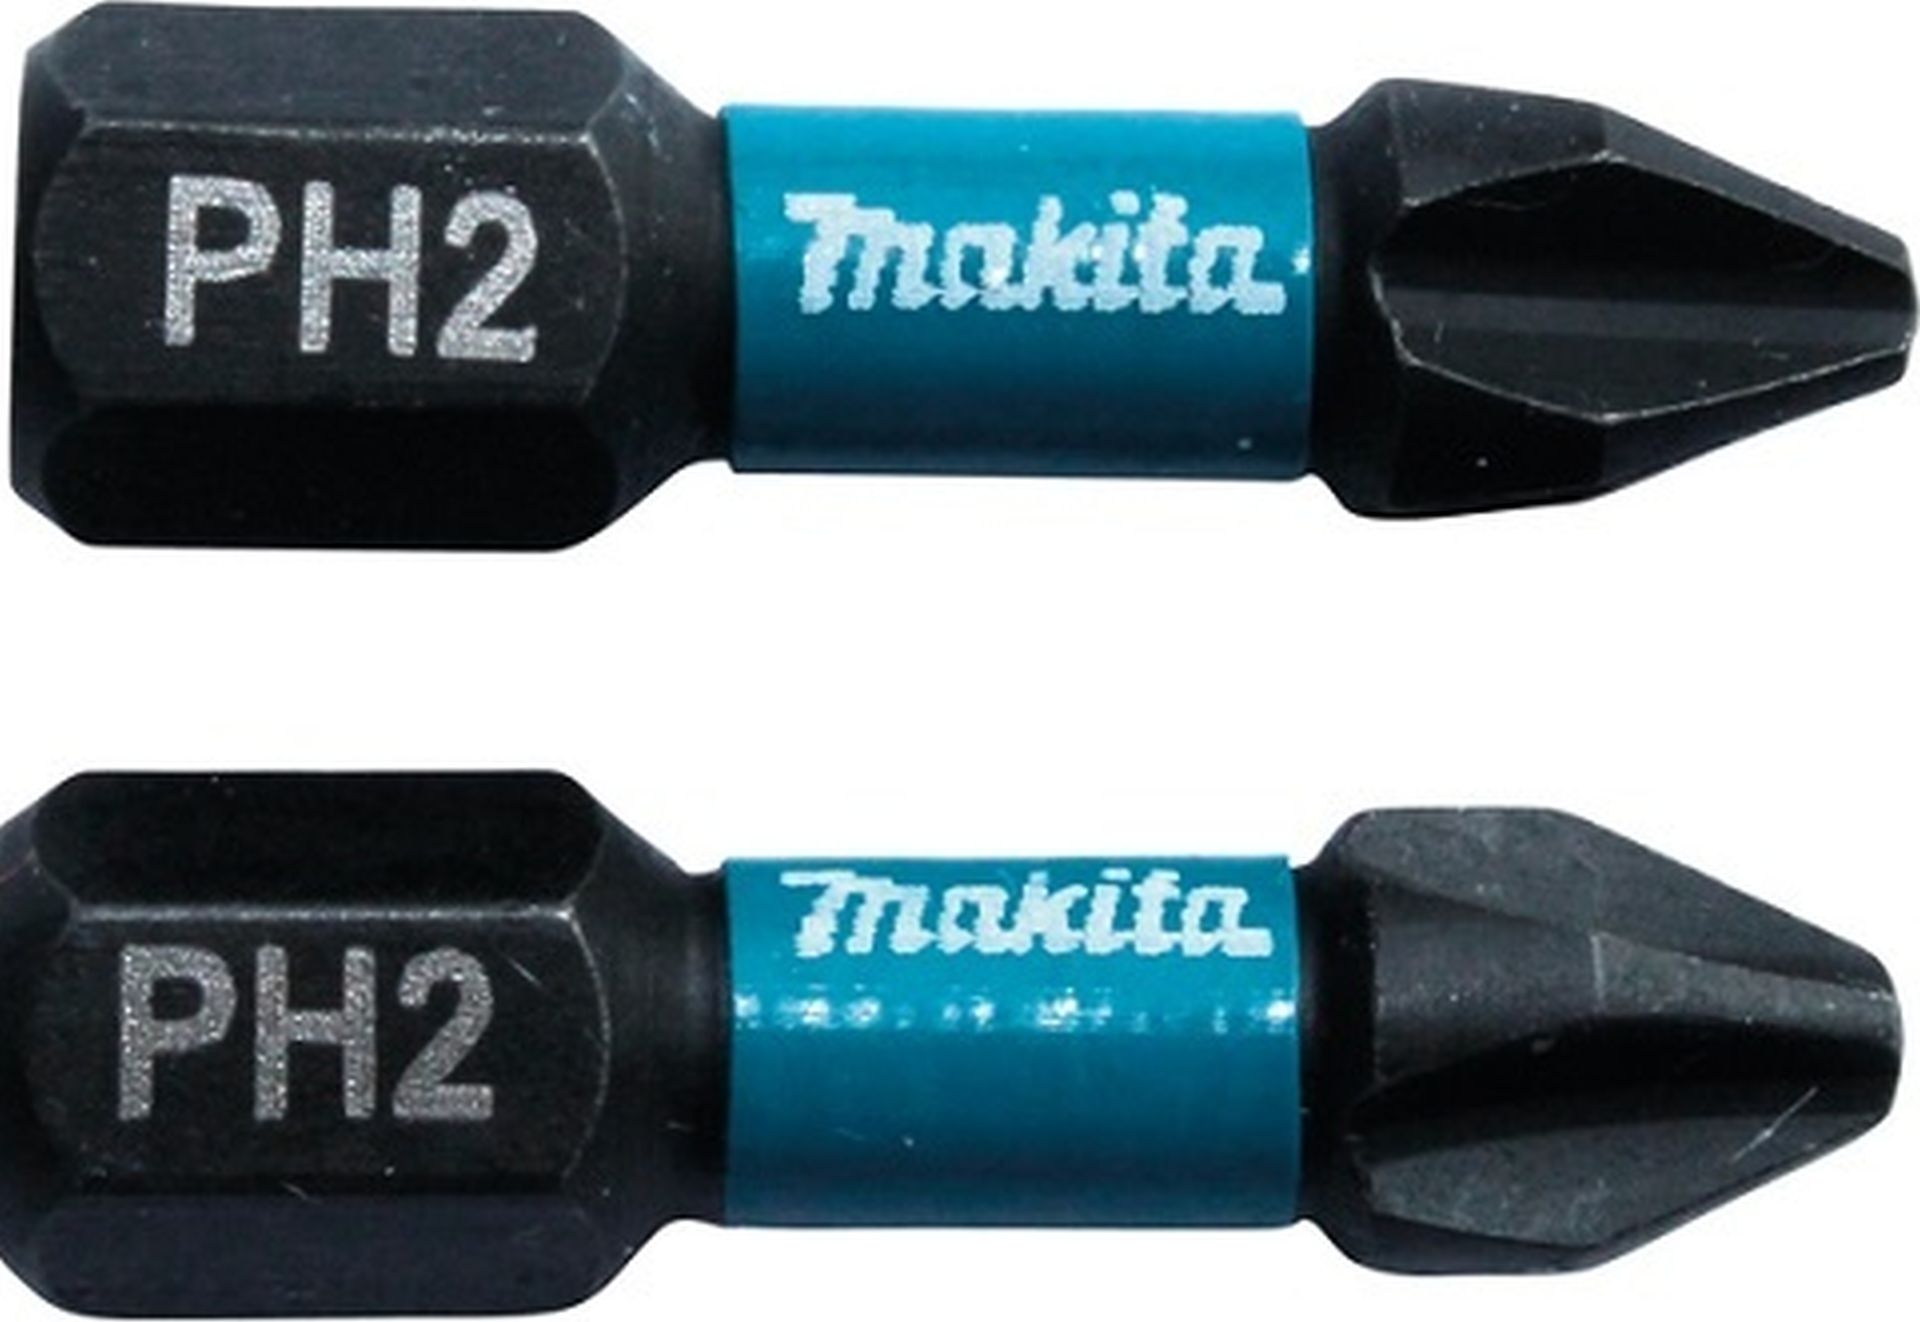 MAKITA B-63616 Torzní bit 1/4" Impact Black PH2, 25mm/2ks